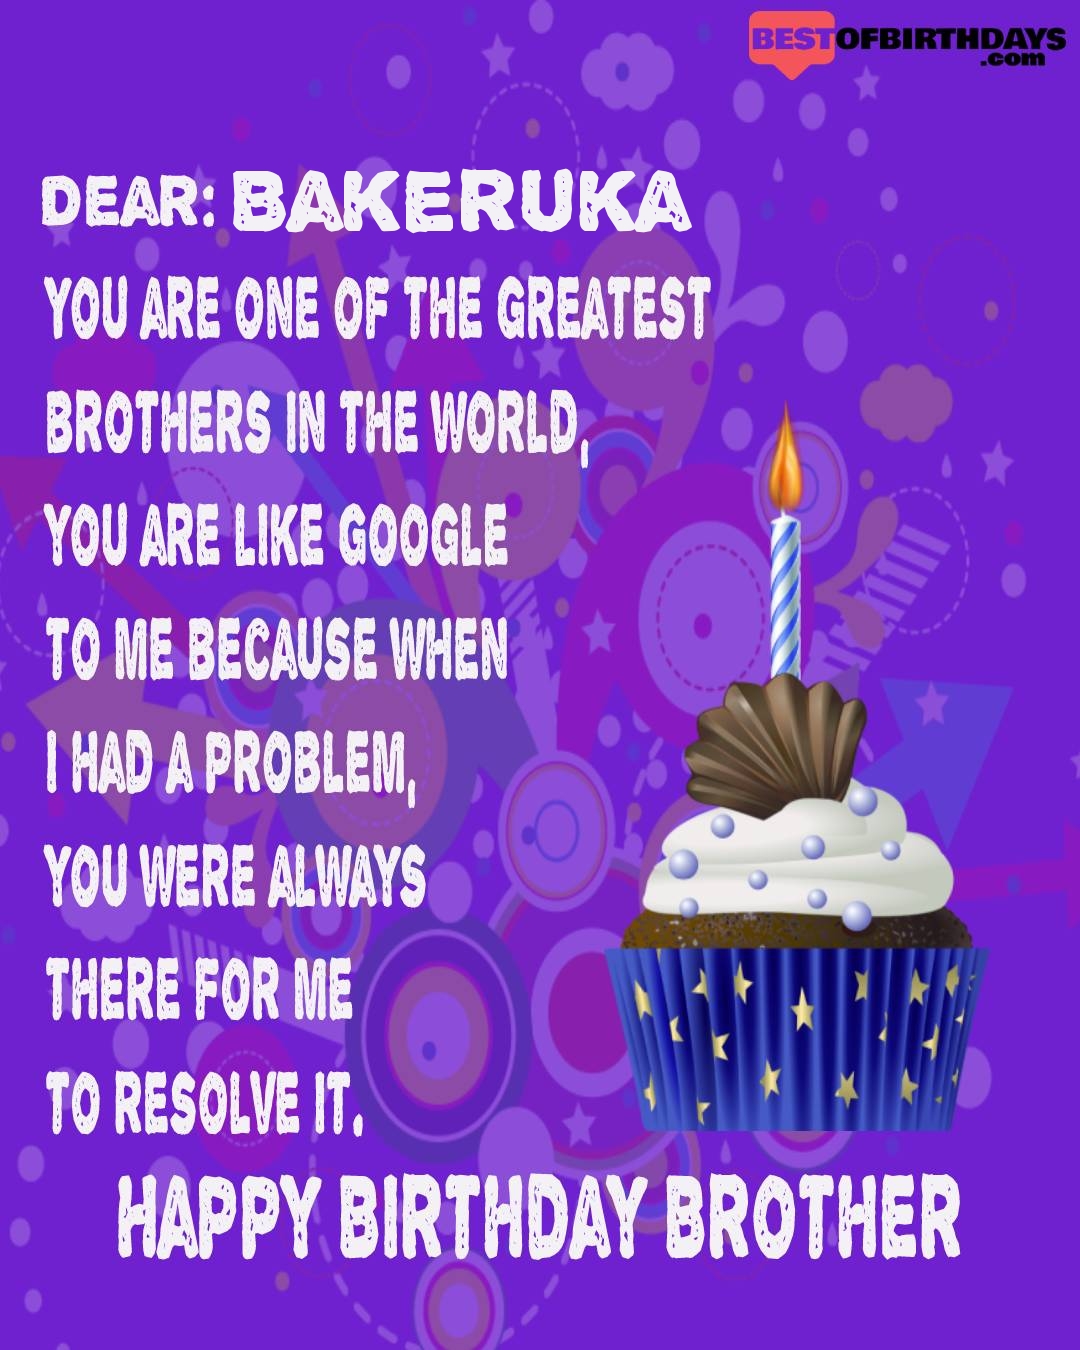 Happy birthday bakeruka bhai brother bro